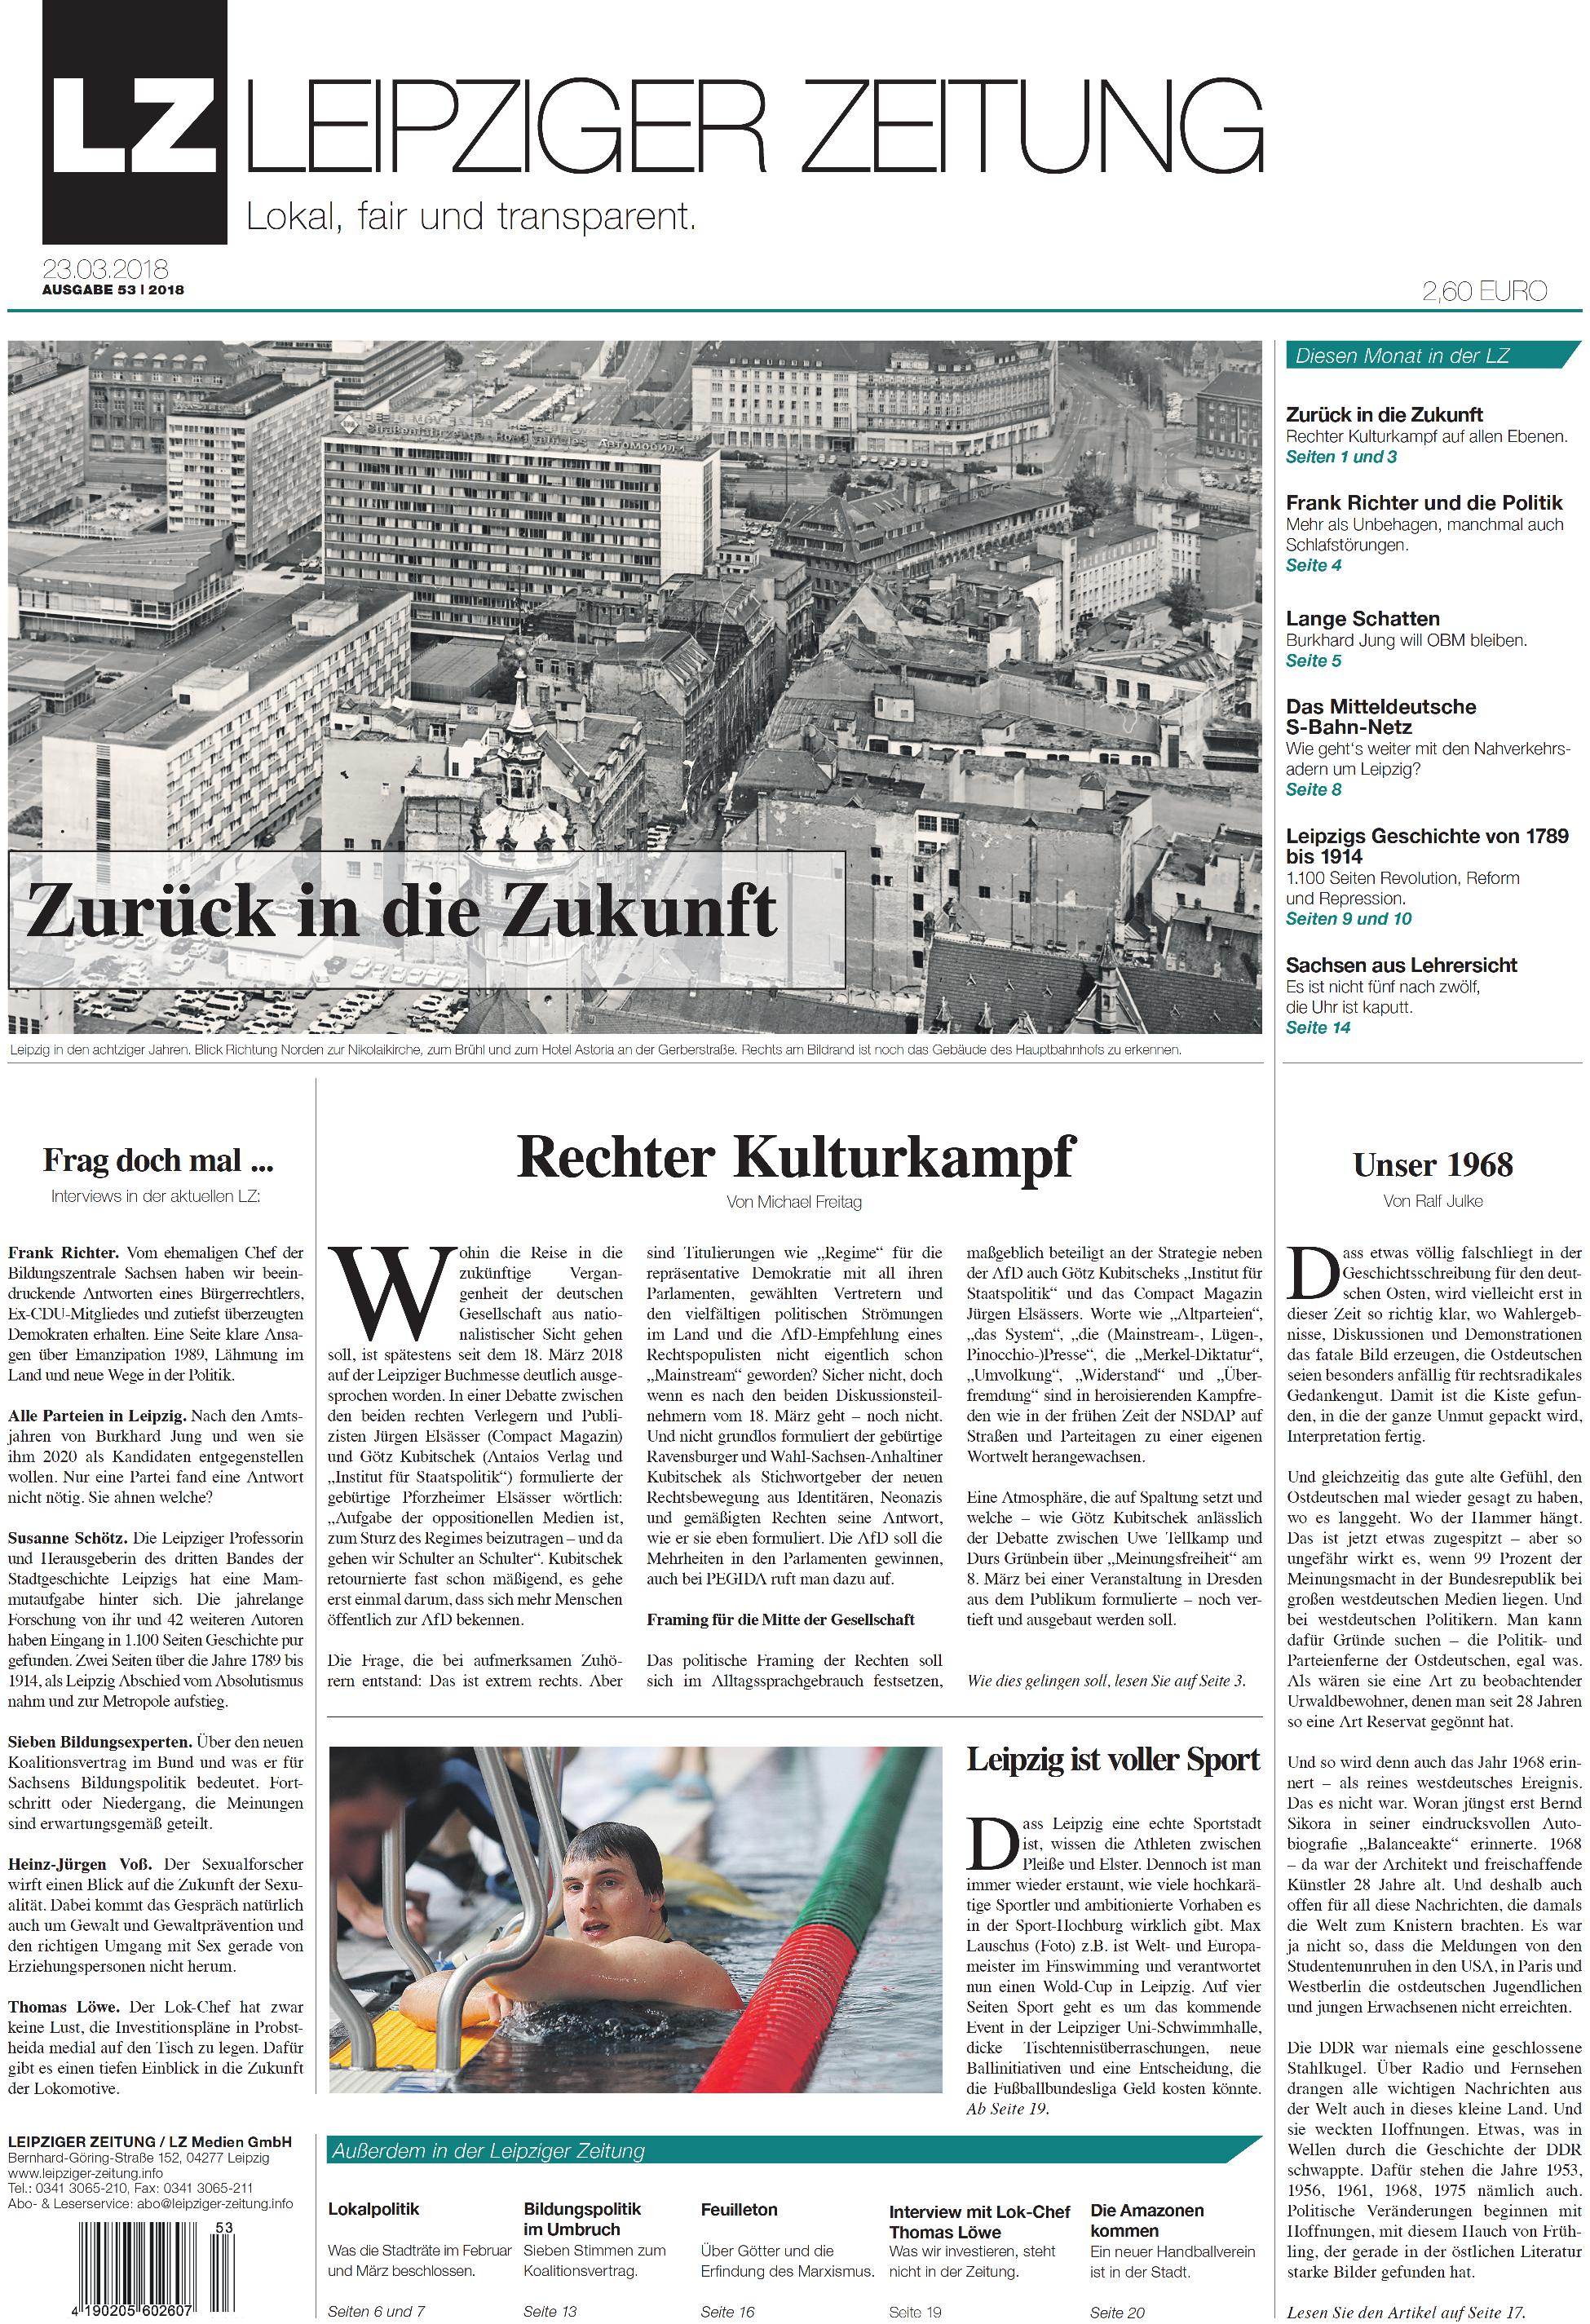 44++ Bild zeitung leipzig online , Die neue Leipziger Zeitung Nr. 53 beschäftigt sich mit Kulturkämpfen